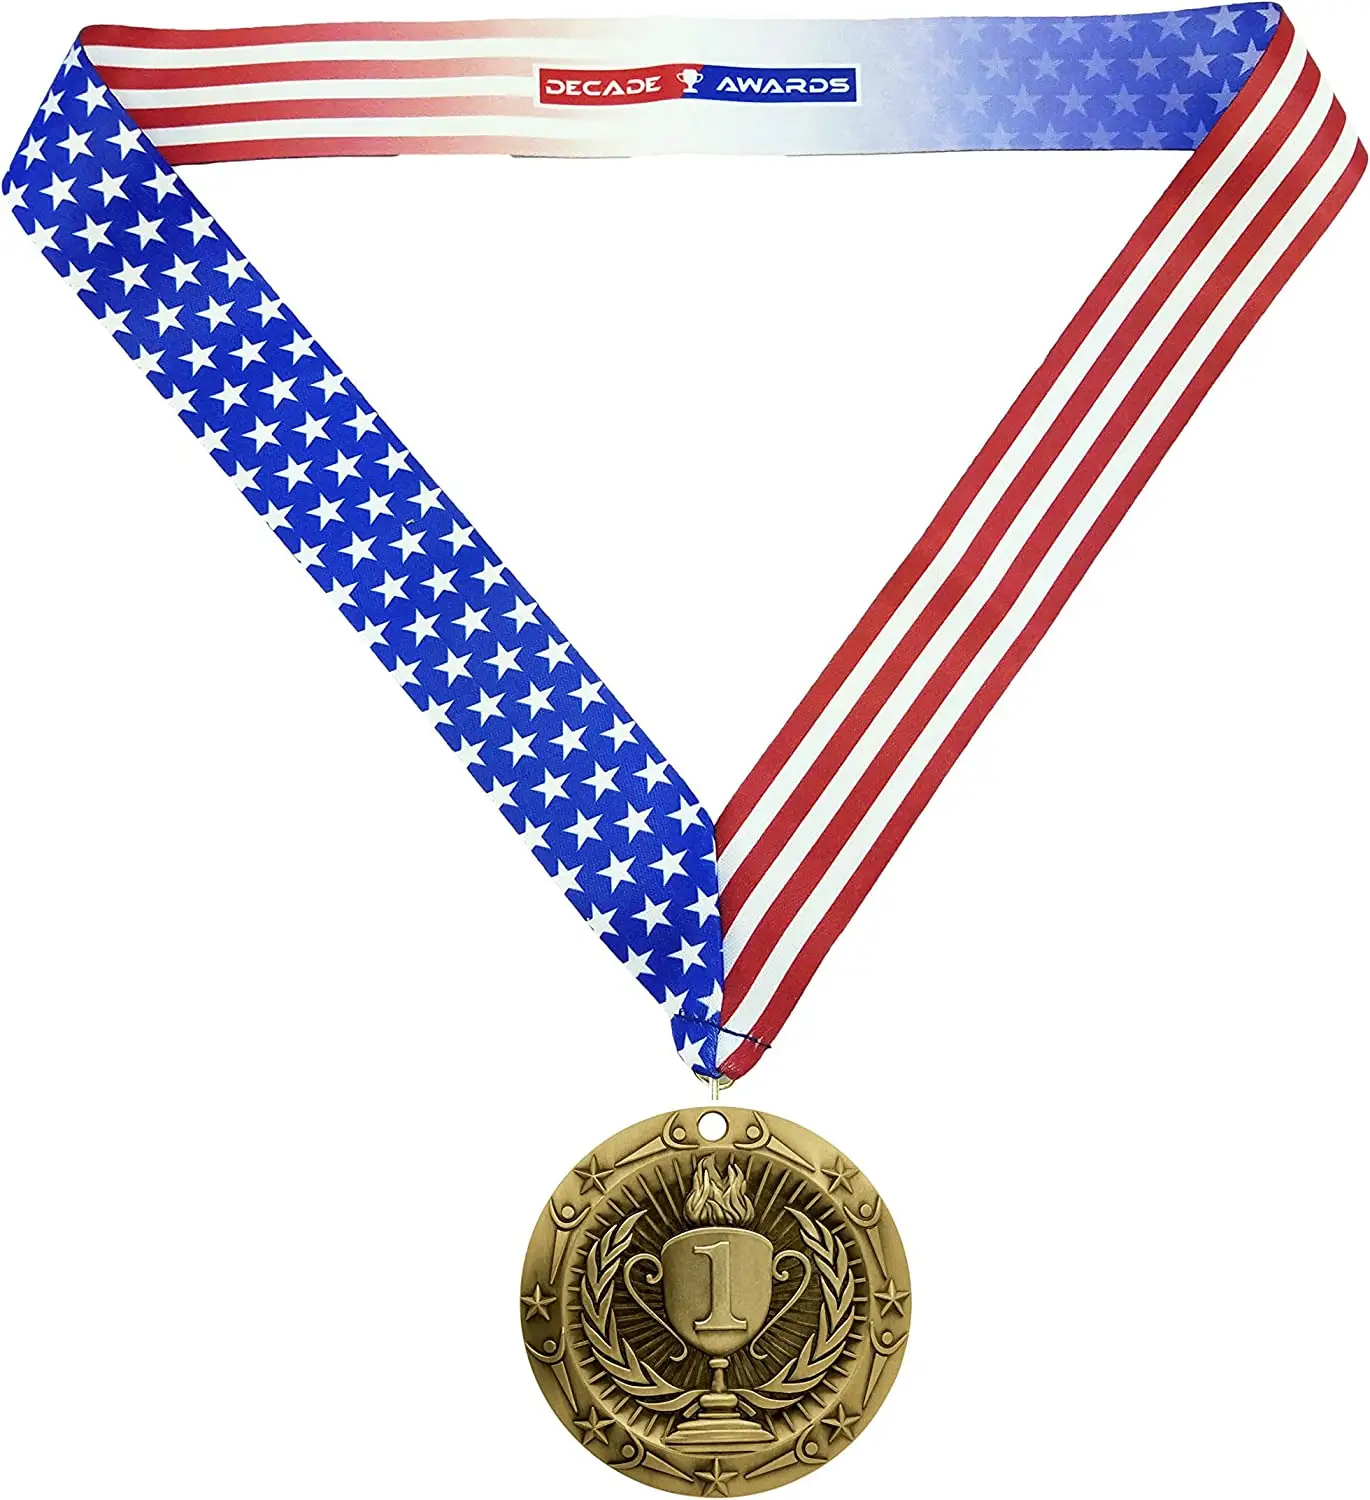 Beste Kwaliteit Bekroonde Badge Met Hals Lint Breed Medaillon Met Sterren En Strepen Amerikaanse Vlag